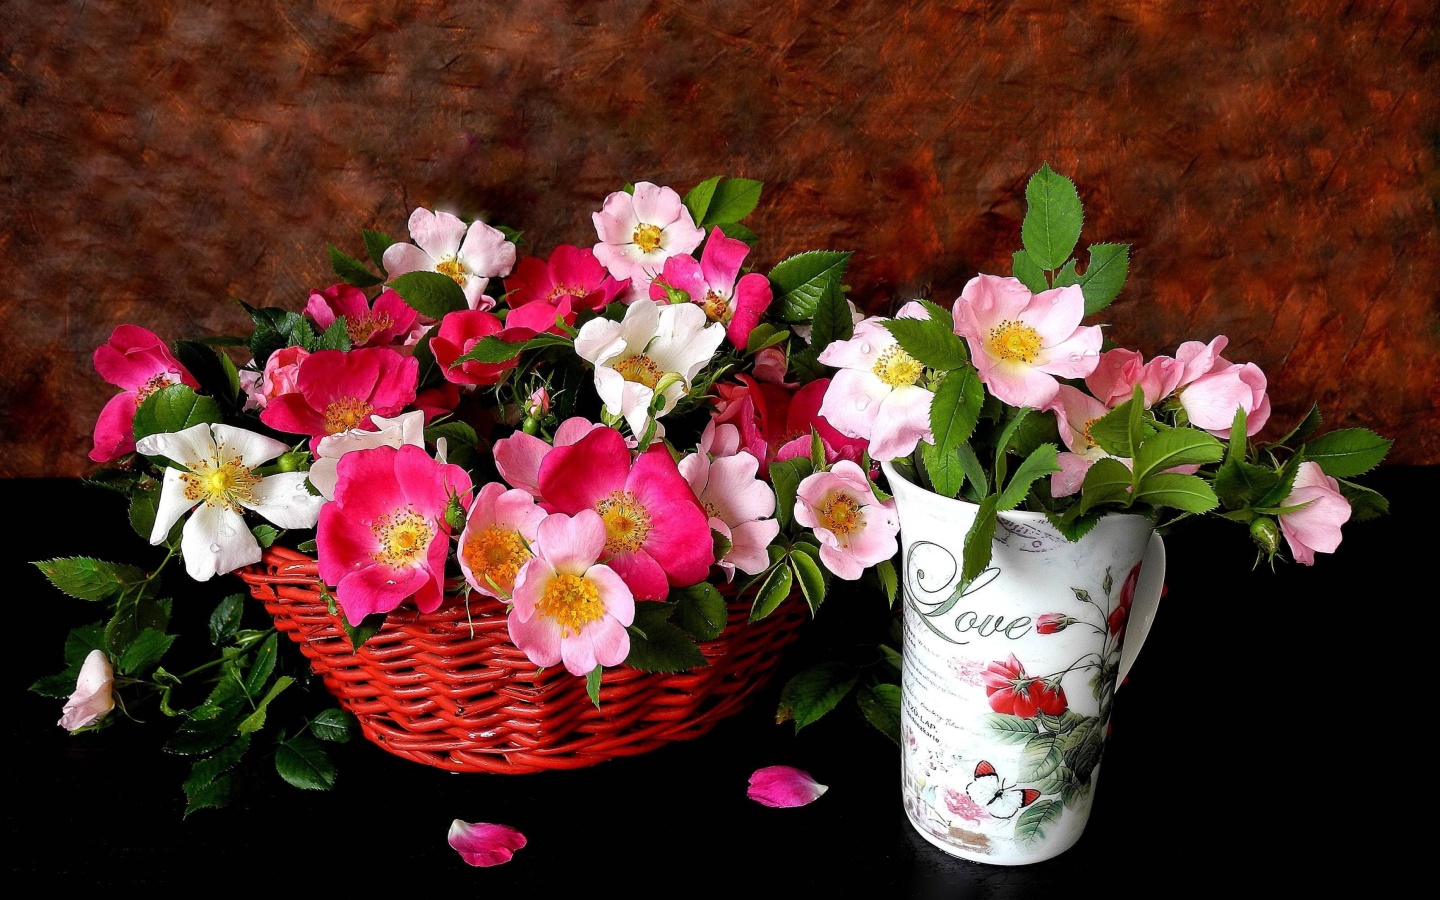 Sweetheart flowers wallpaper 1440x900